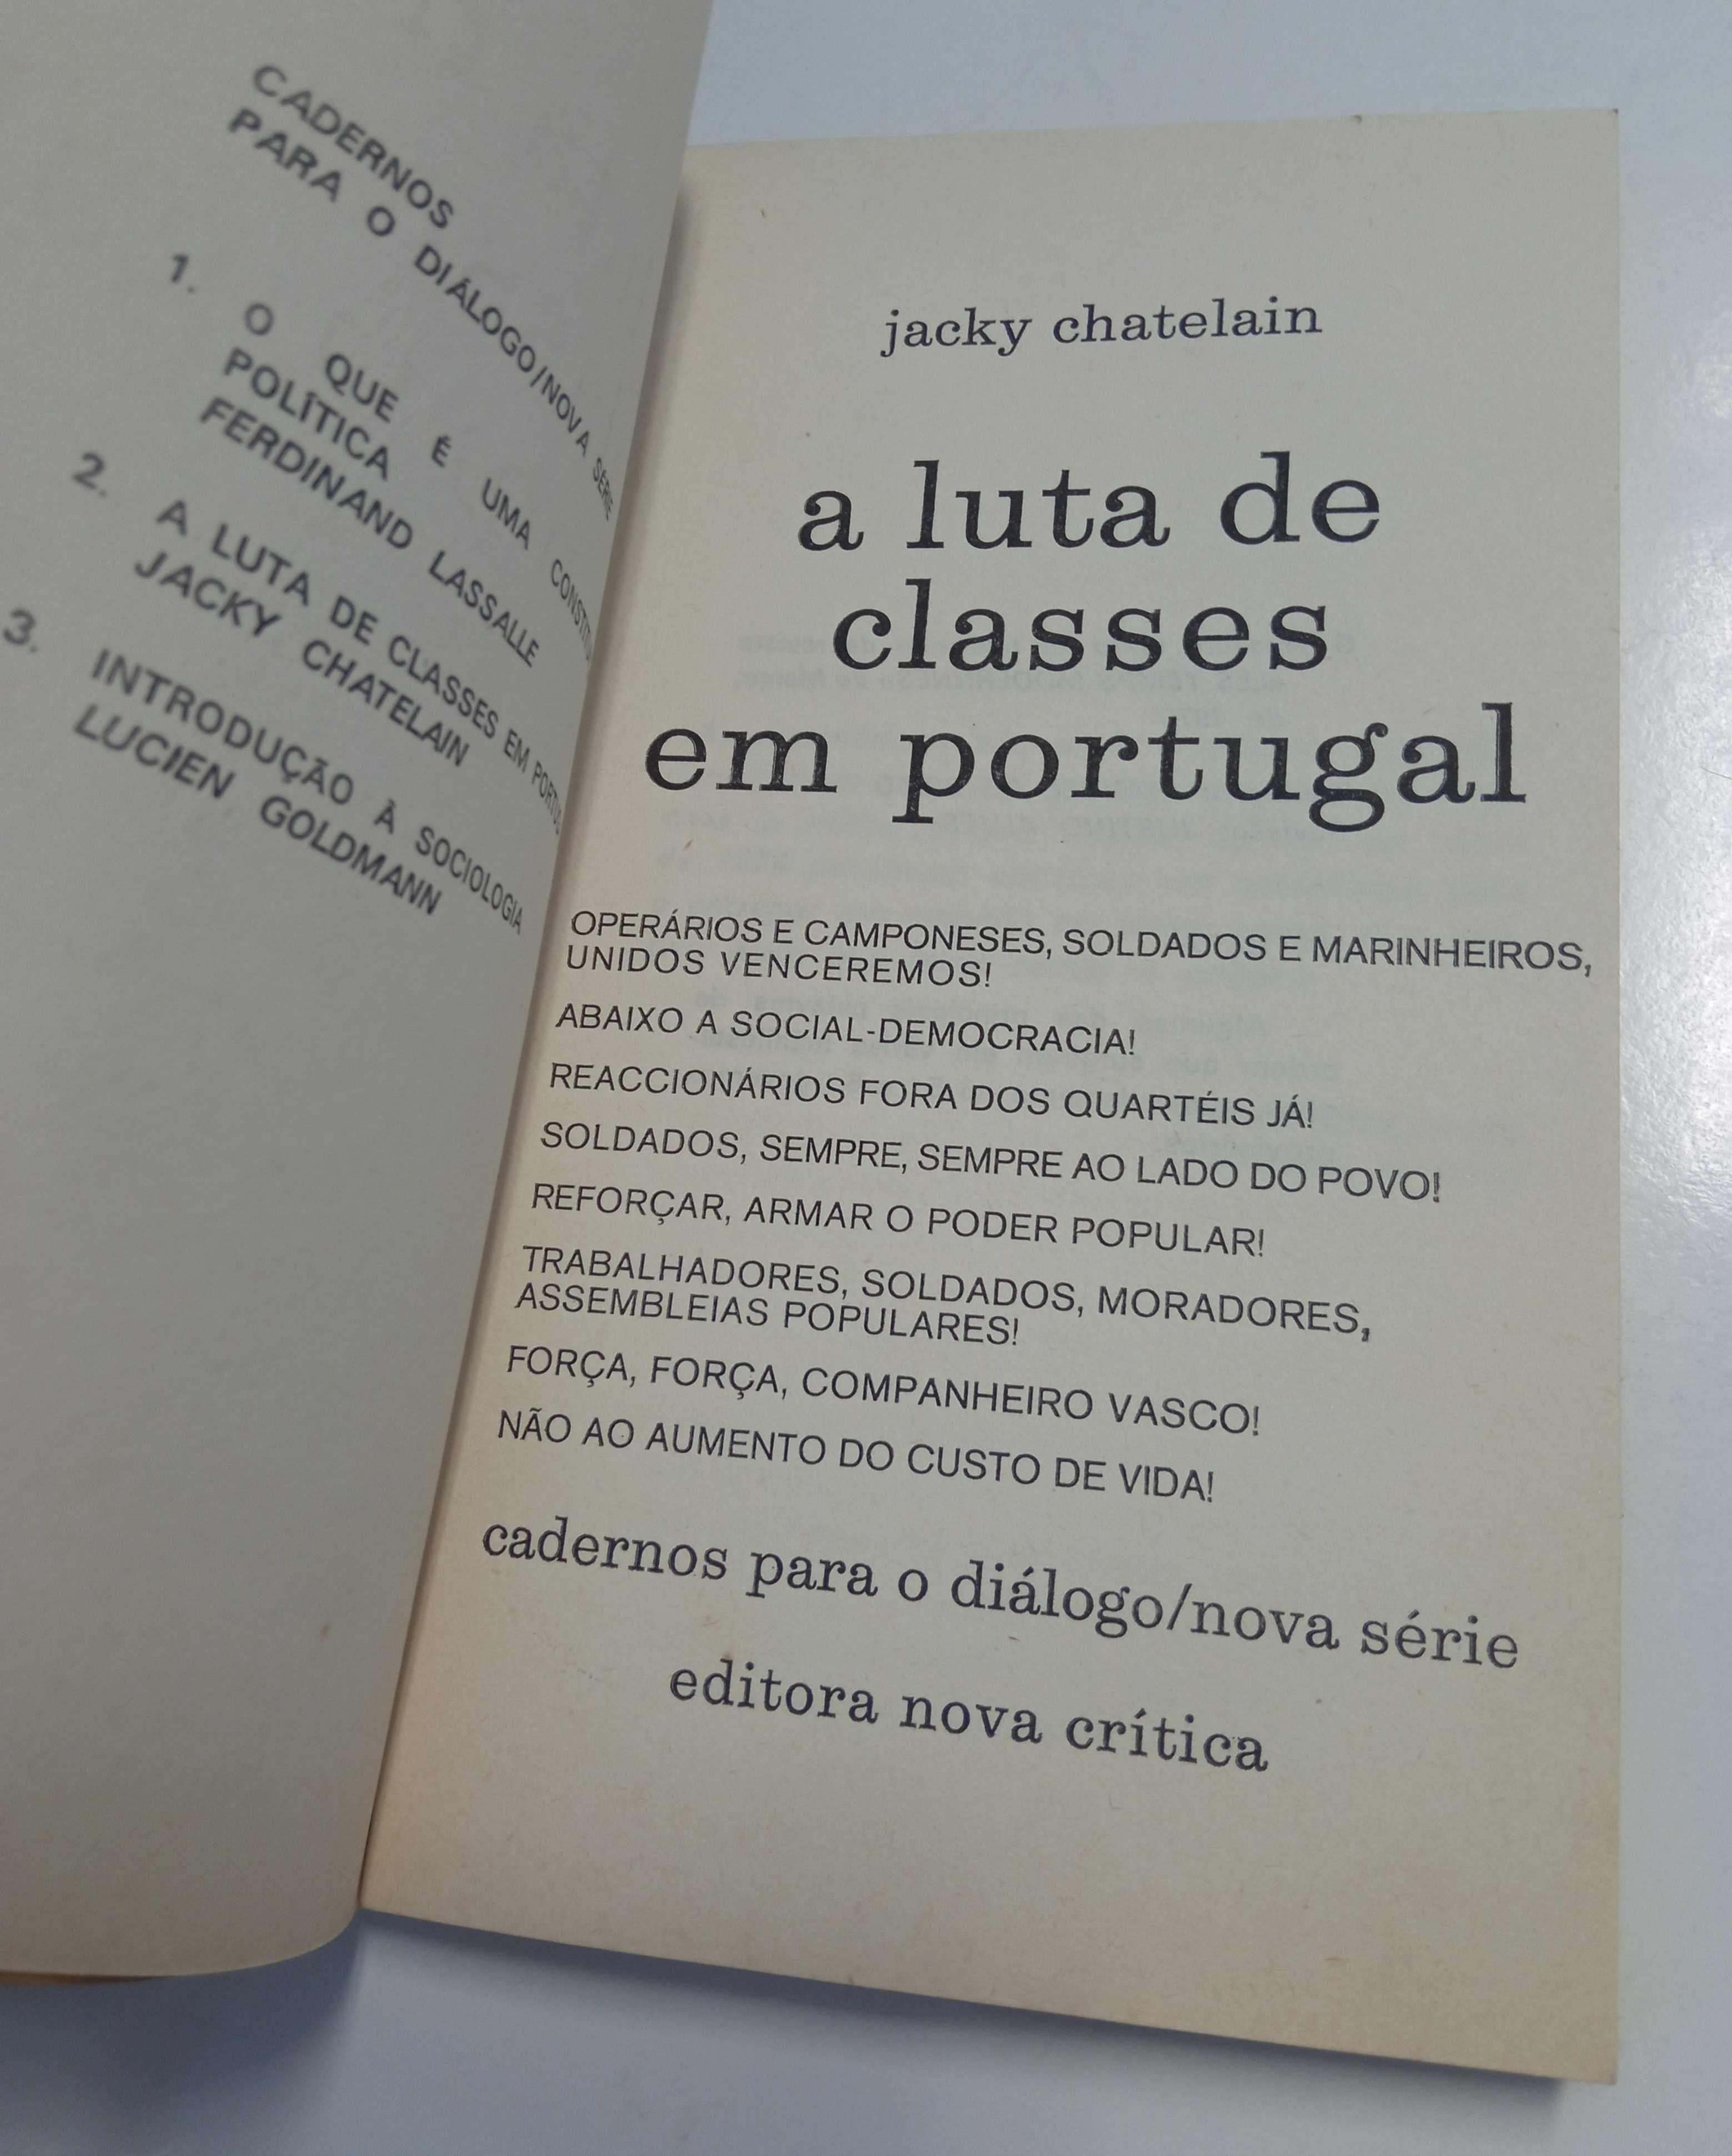 A luta de classes em Portugal, de Jacky Chatelain